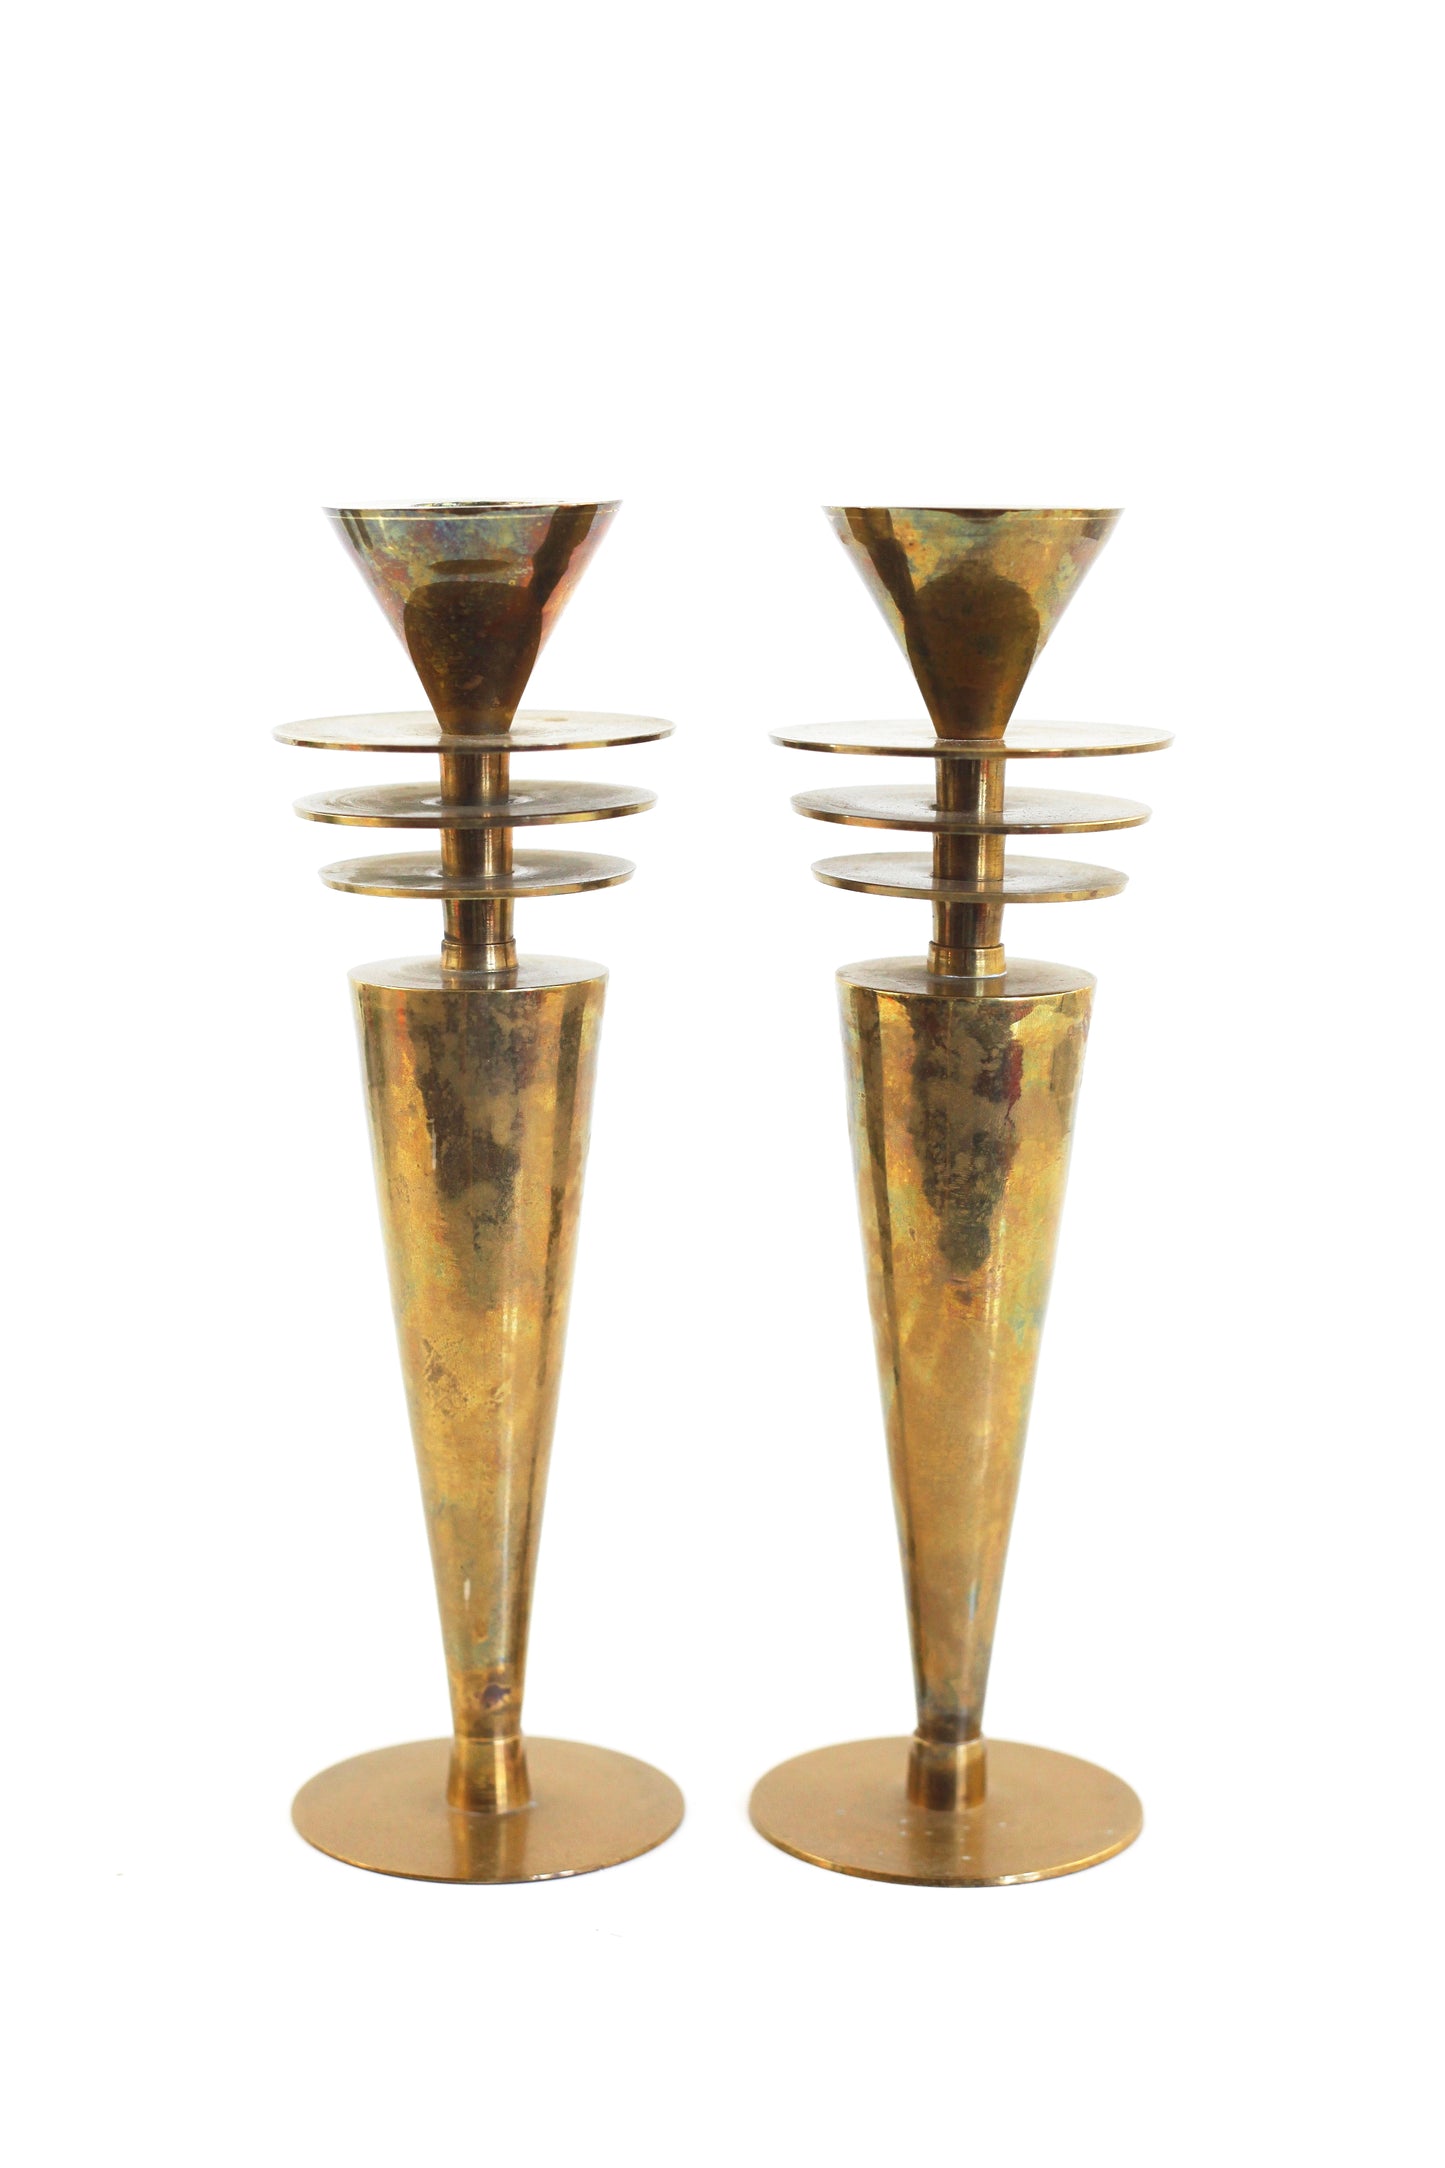 SOLD - 1930s Machine Age Brass Candlesticks